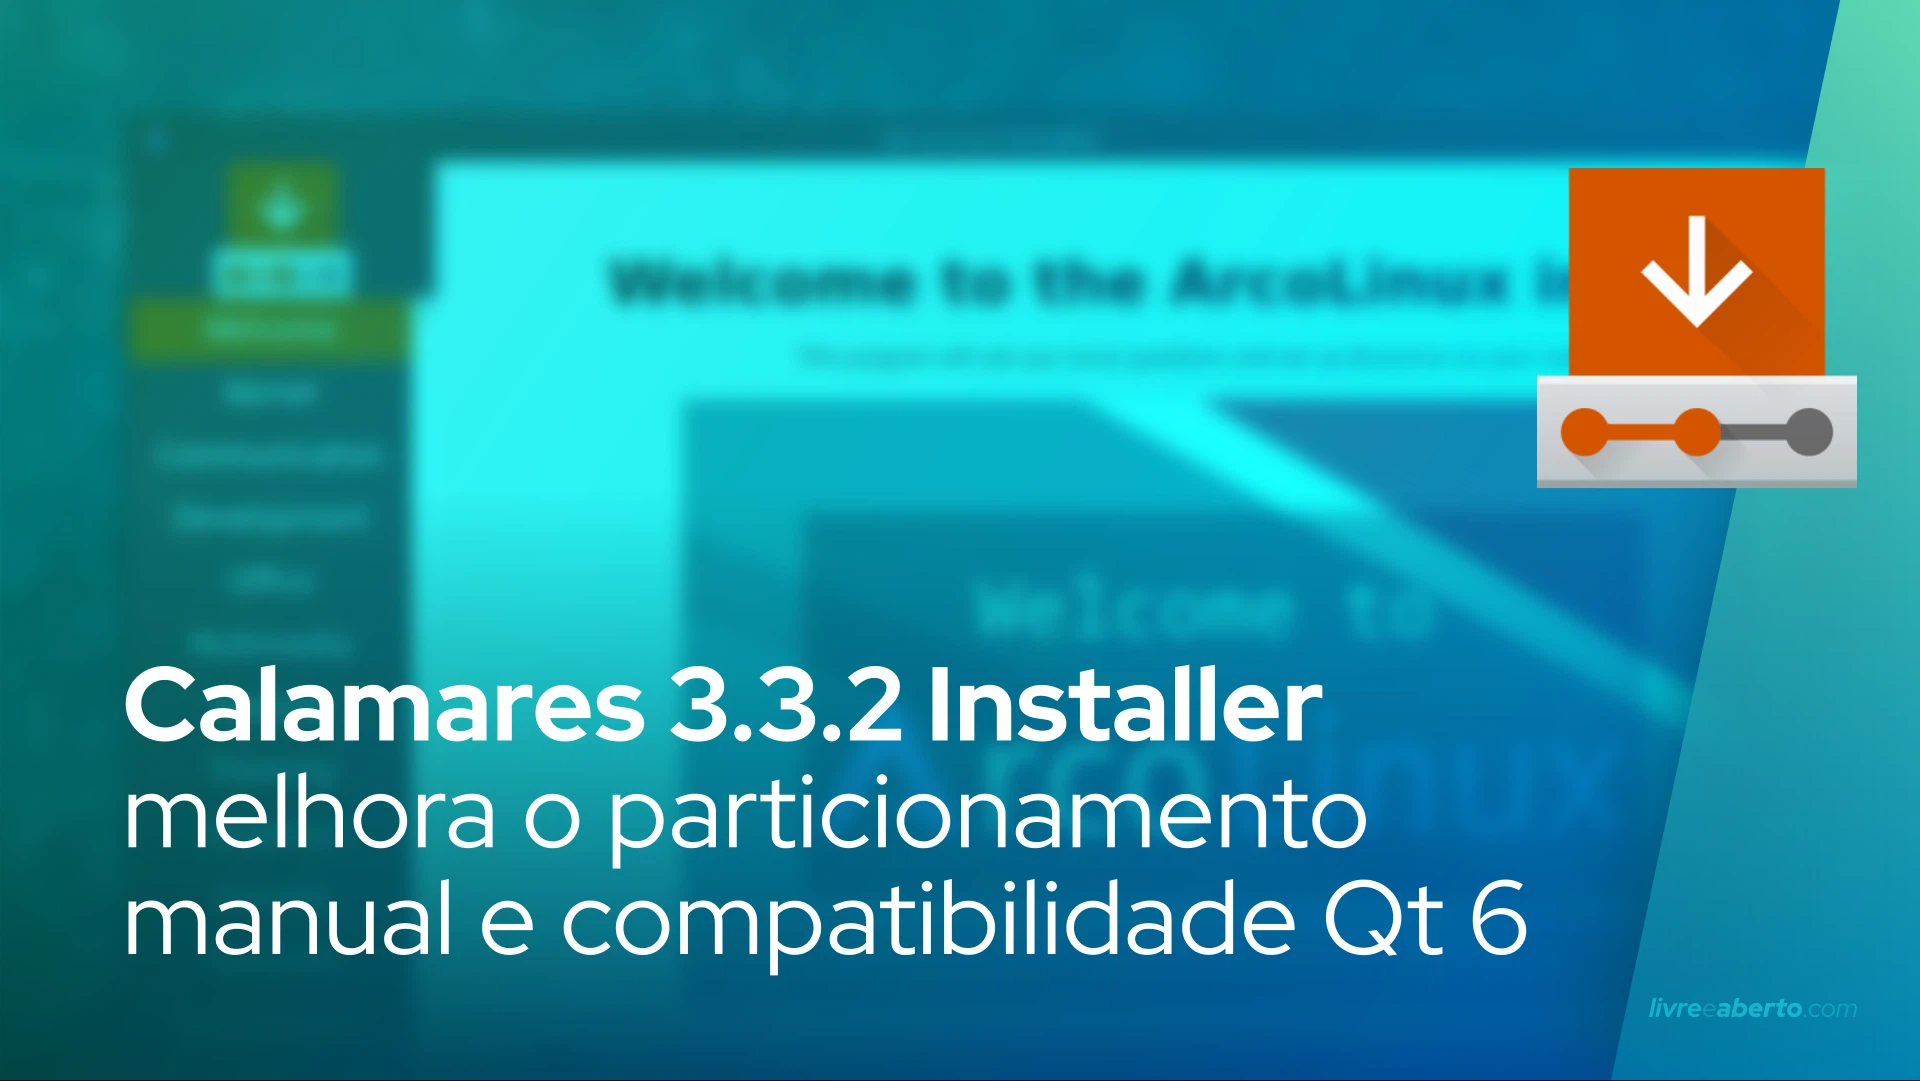 Calamares 3.3.2 Installer melhora o particionamento manual e compatibilidade Qt 6